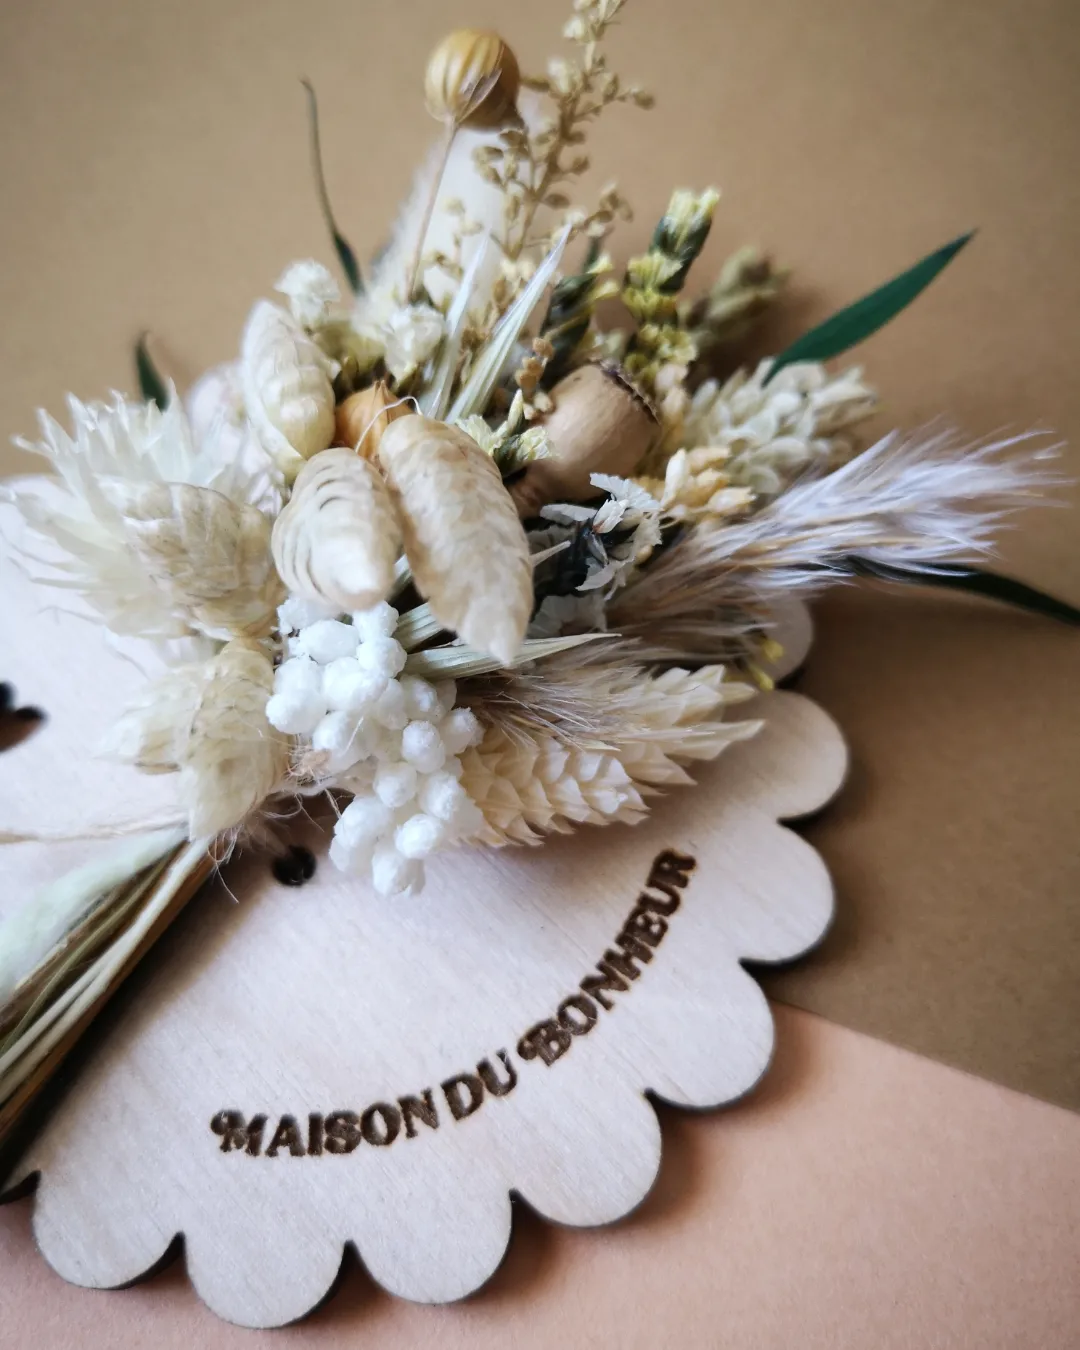 Aimant mini bouquet de fleurs séchées sur support en bois avec